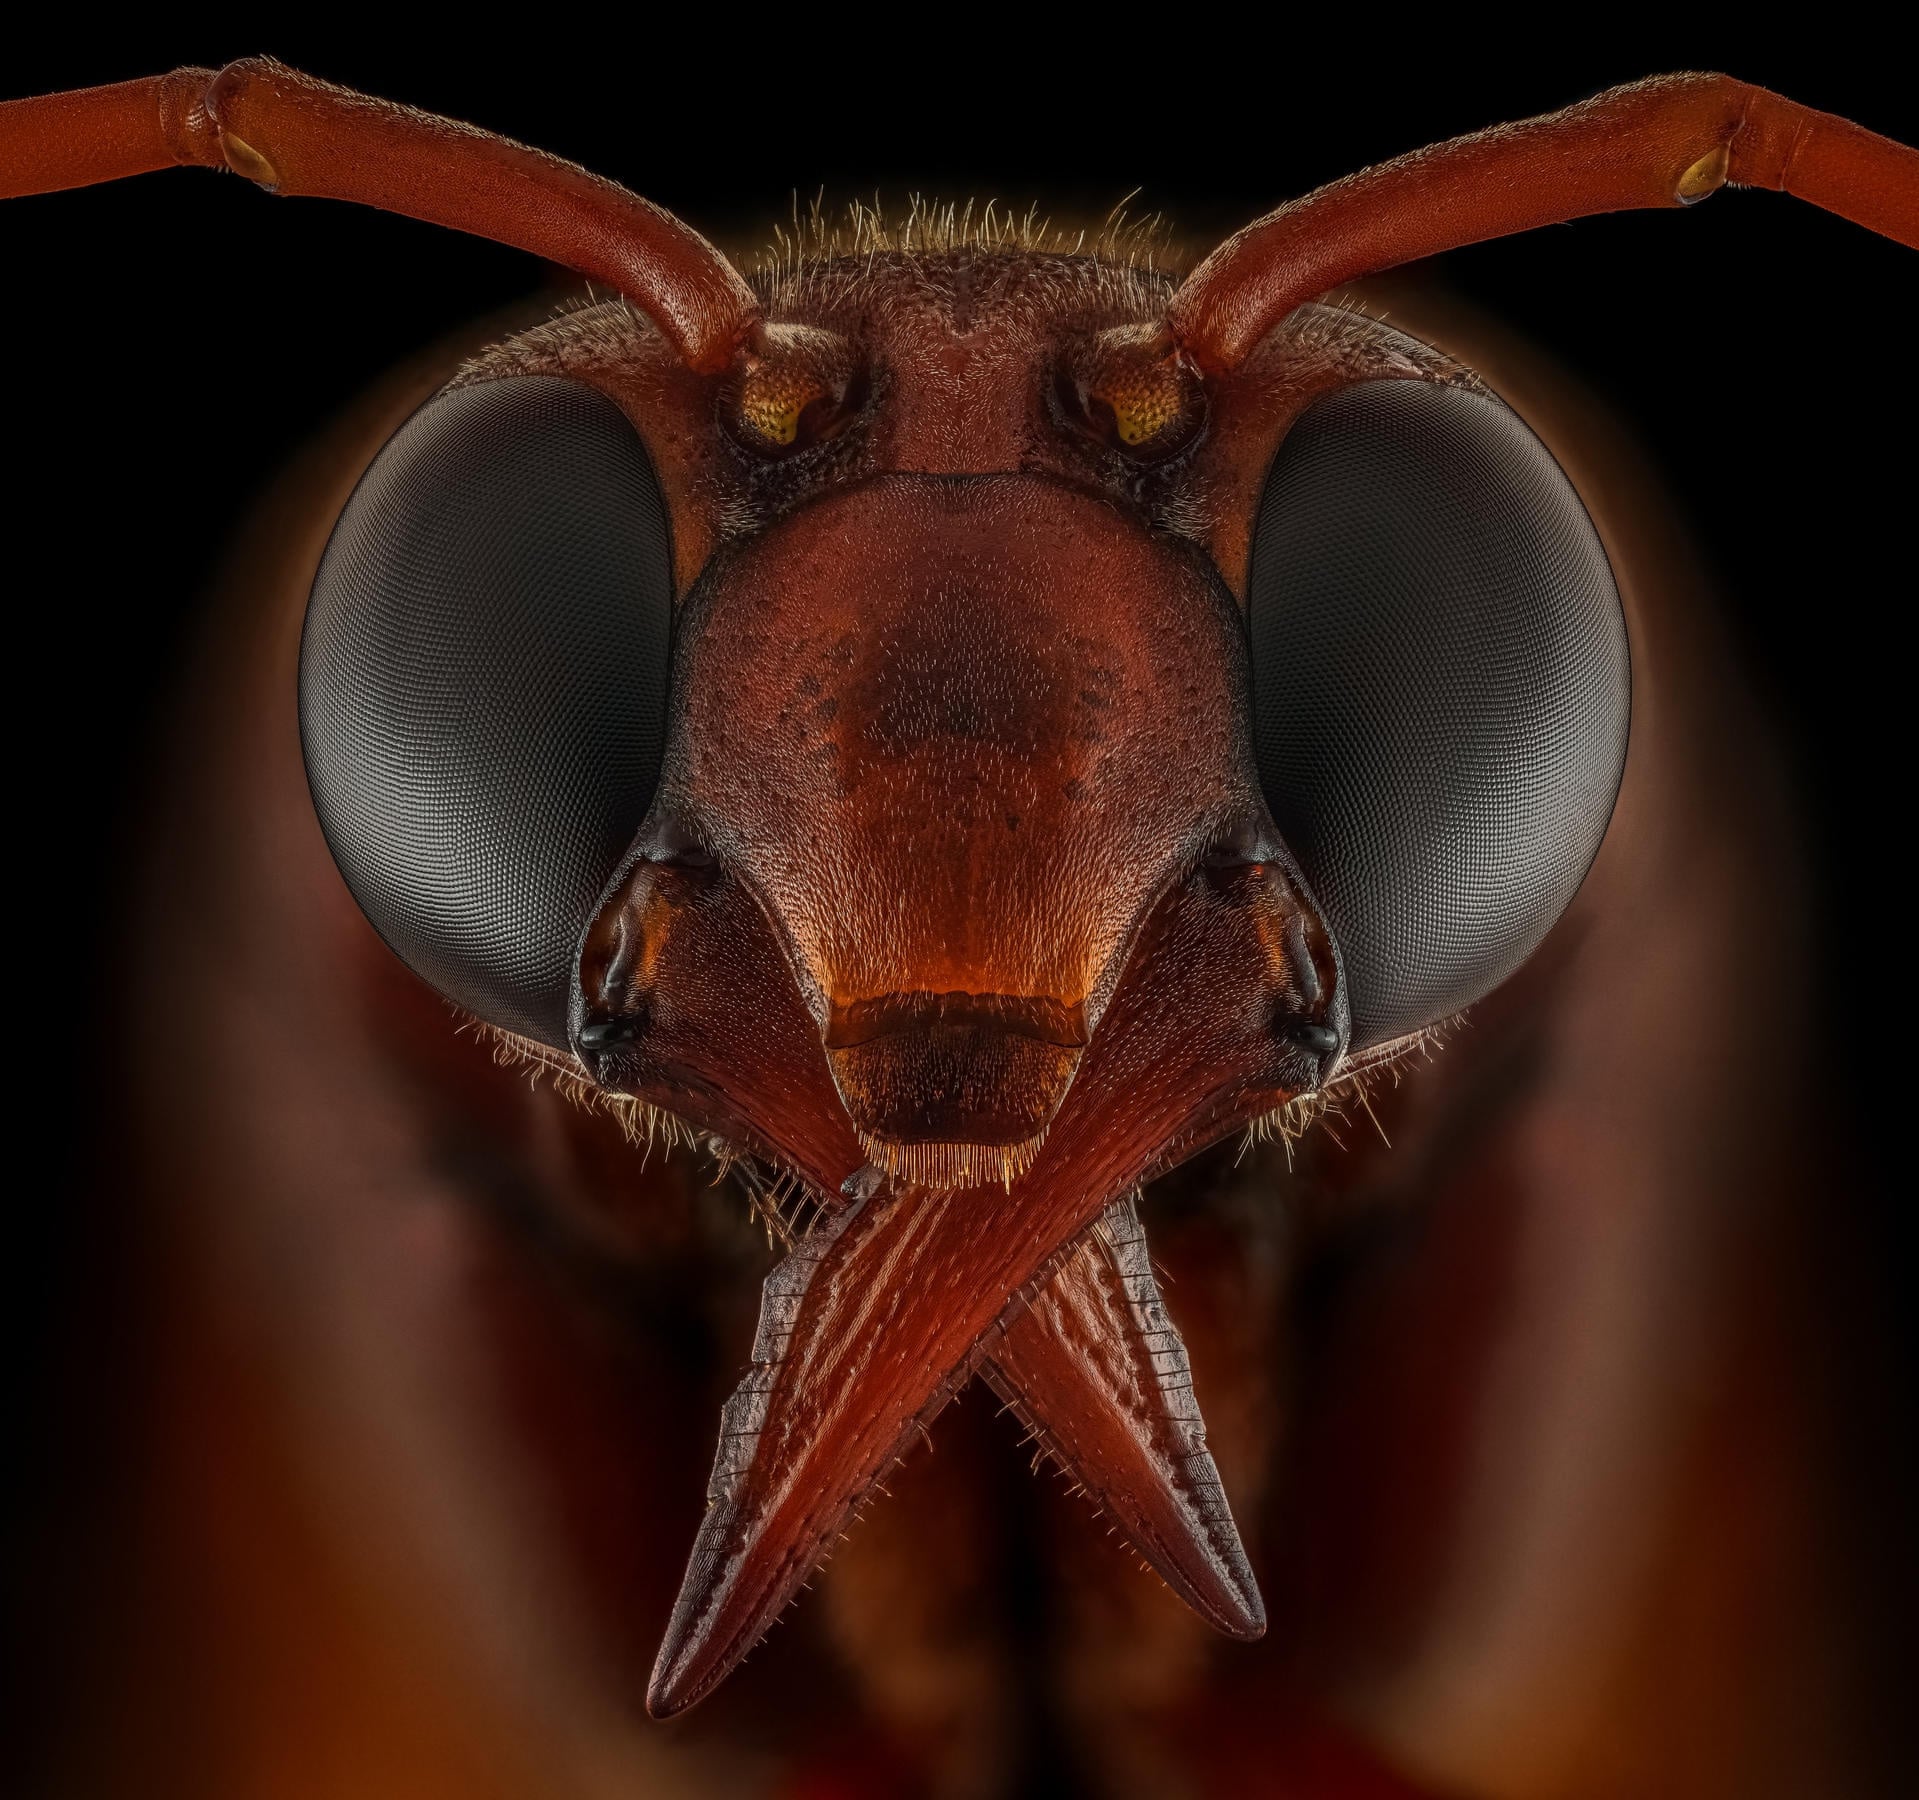 Одиночная оса (Eumeninae) сфотографирована с использованием 173 фотографий, сложенных и объединенных вместе, чтобы получить потрясающее окончательное изображение. Фото: Riyad Hamzi / Luminar Bug Photography Awards